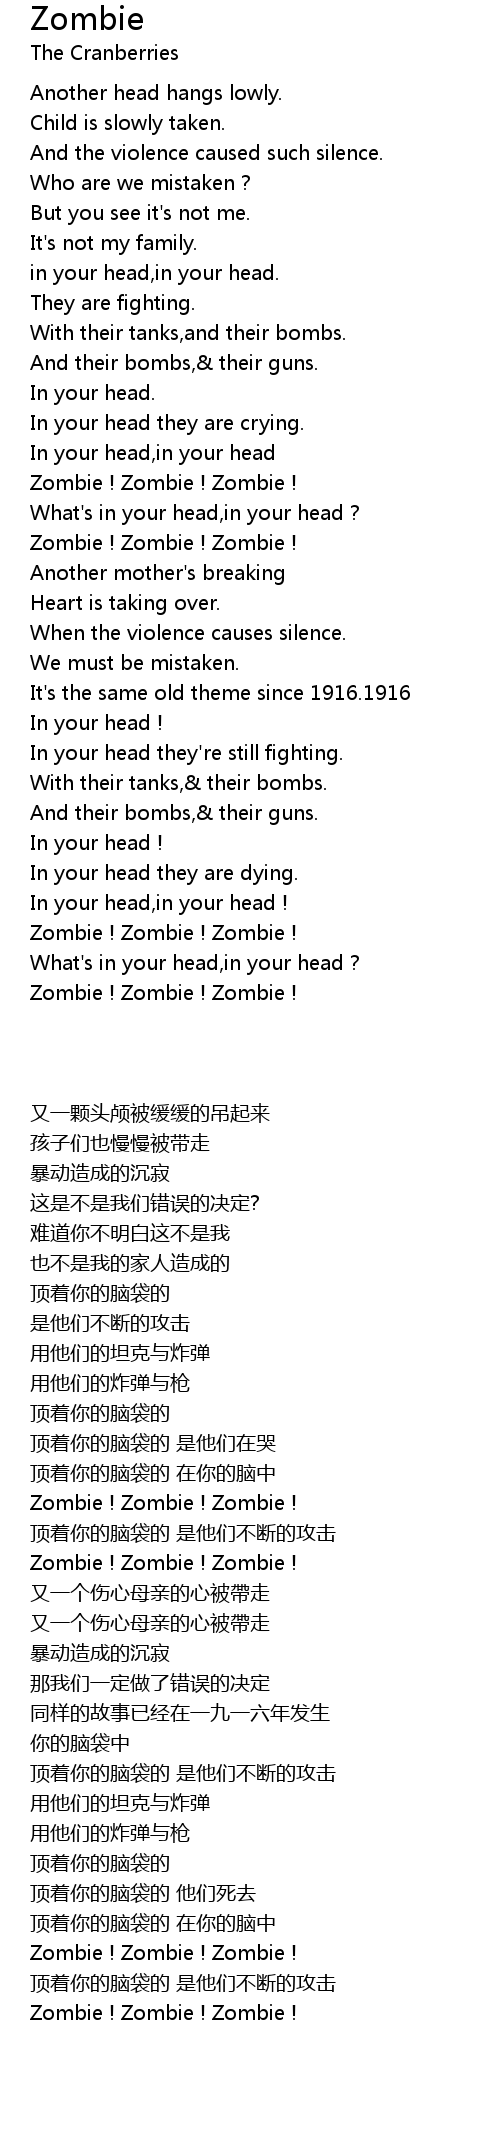 Zombie Lyrics - Follow Lyrics